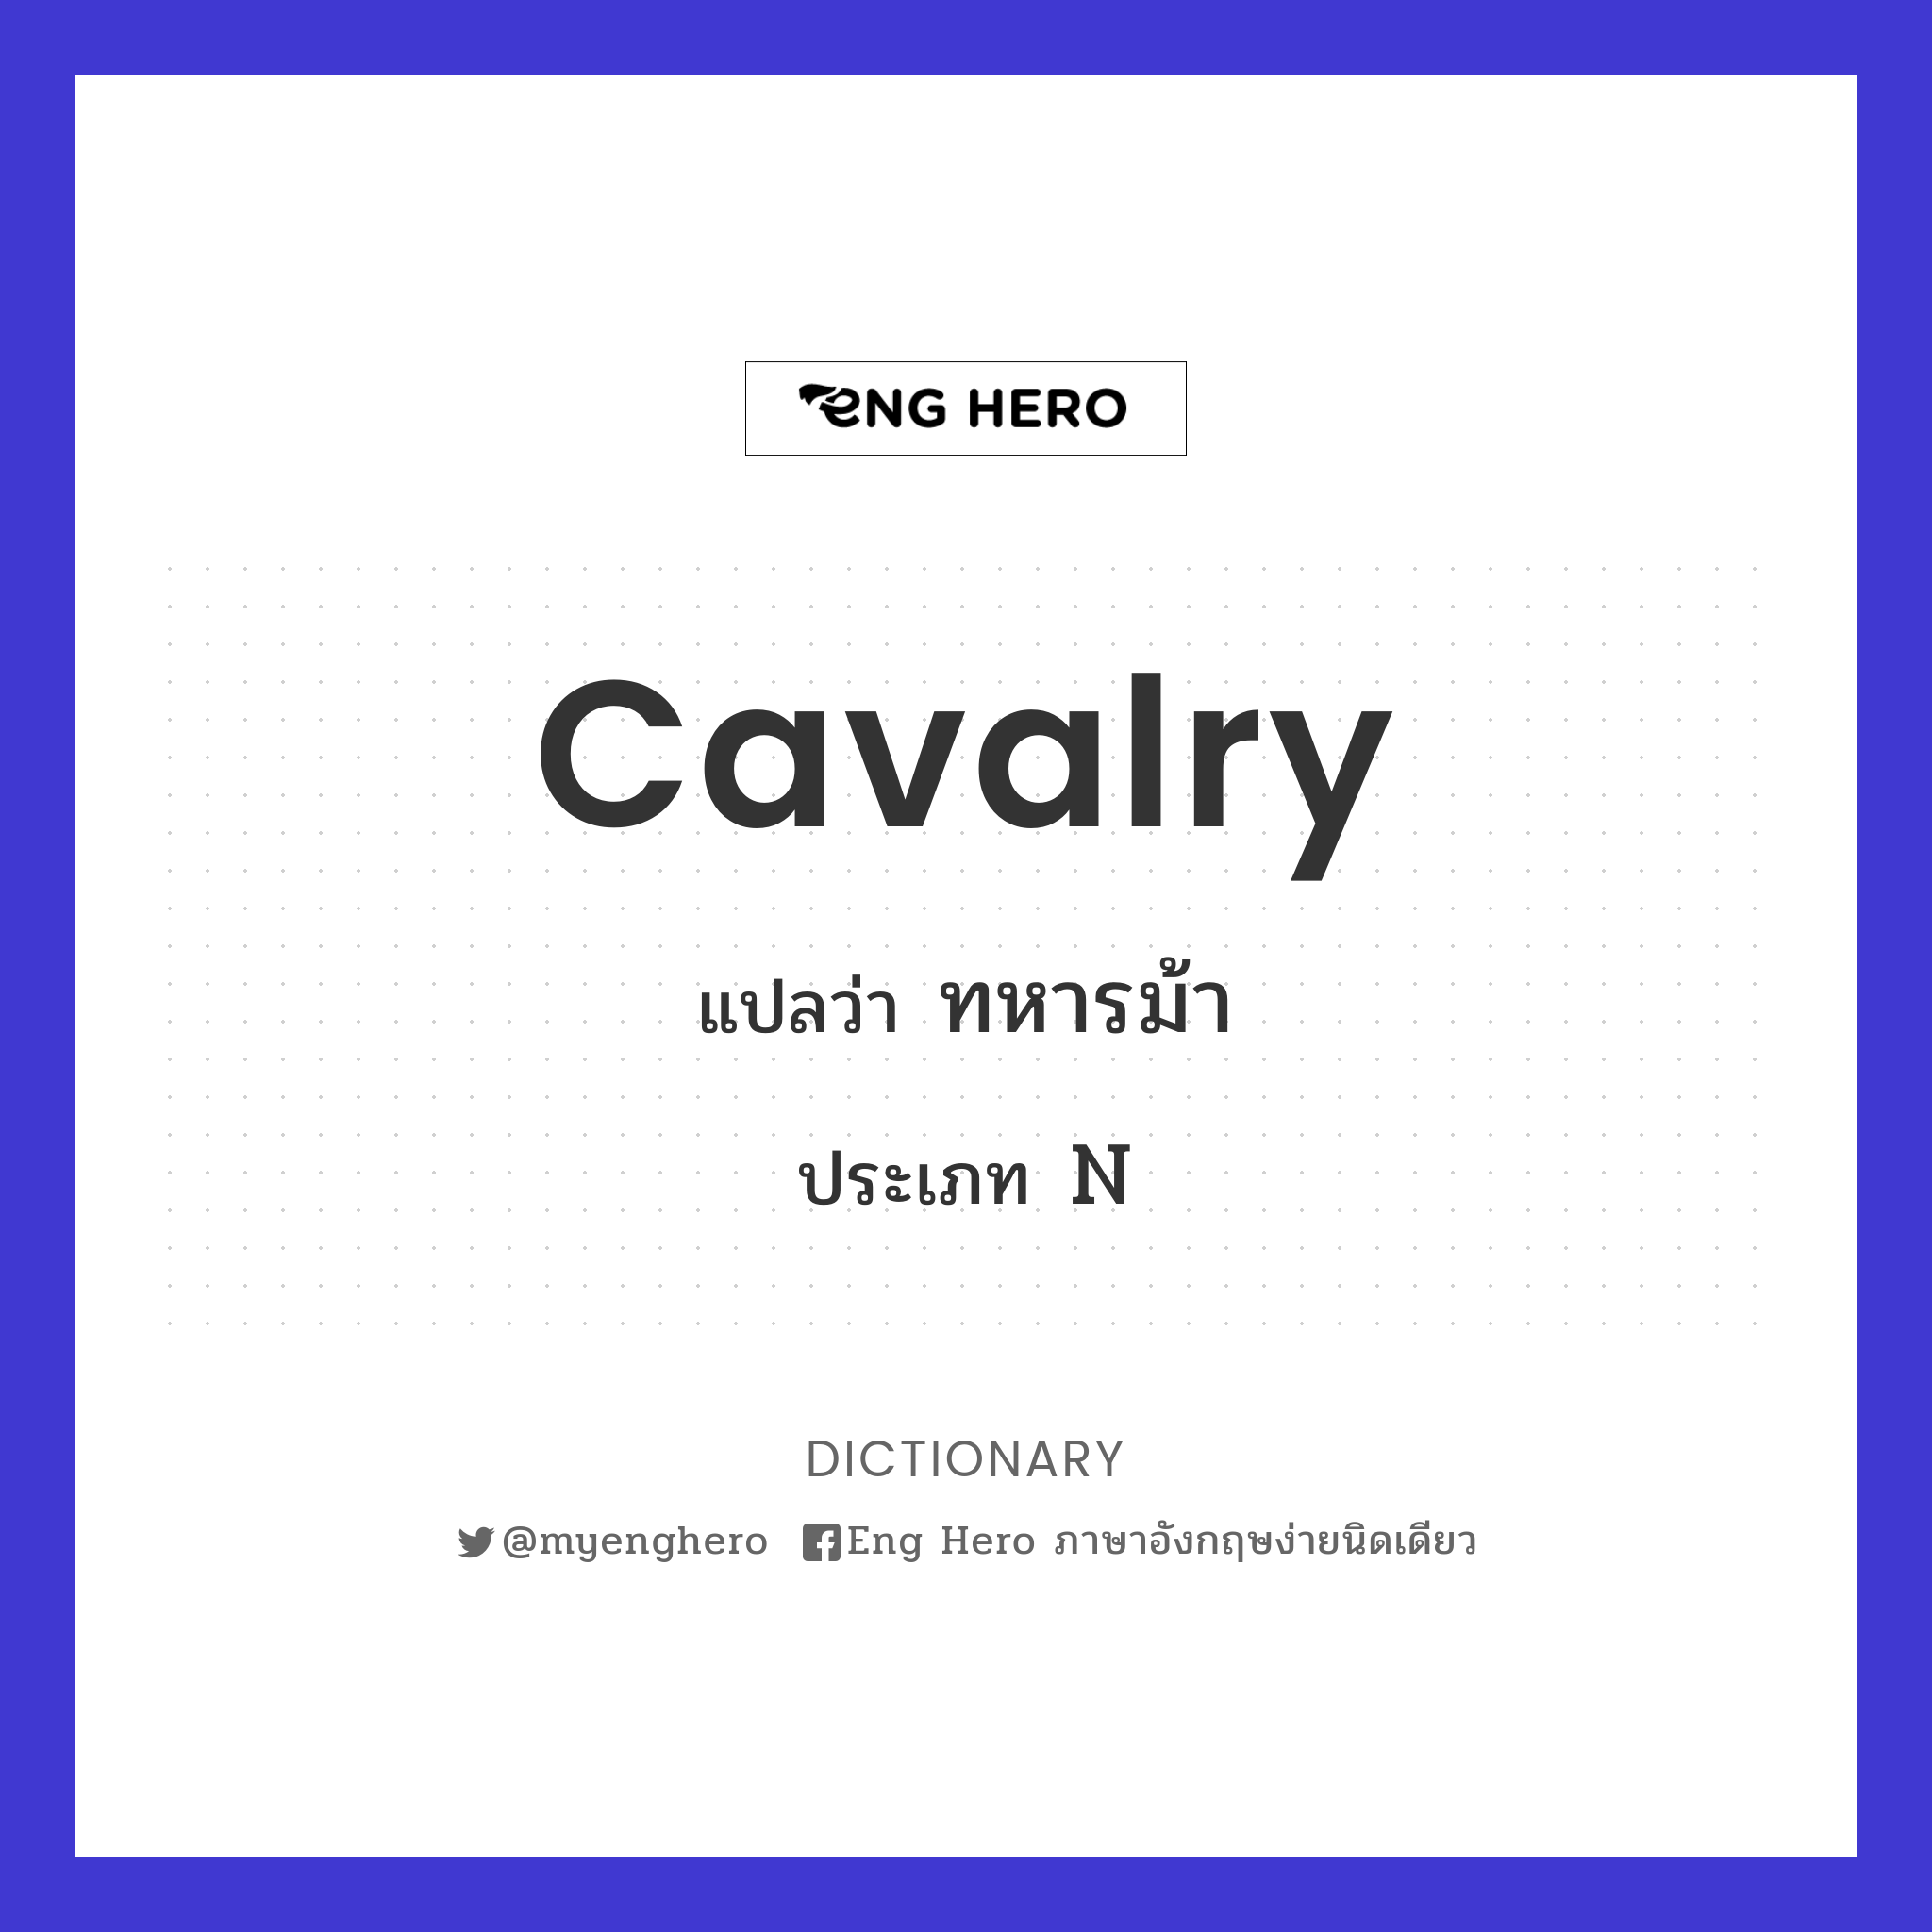 cavalry